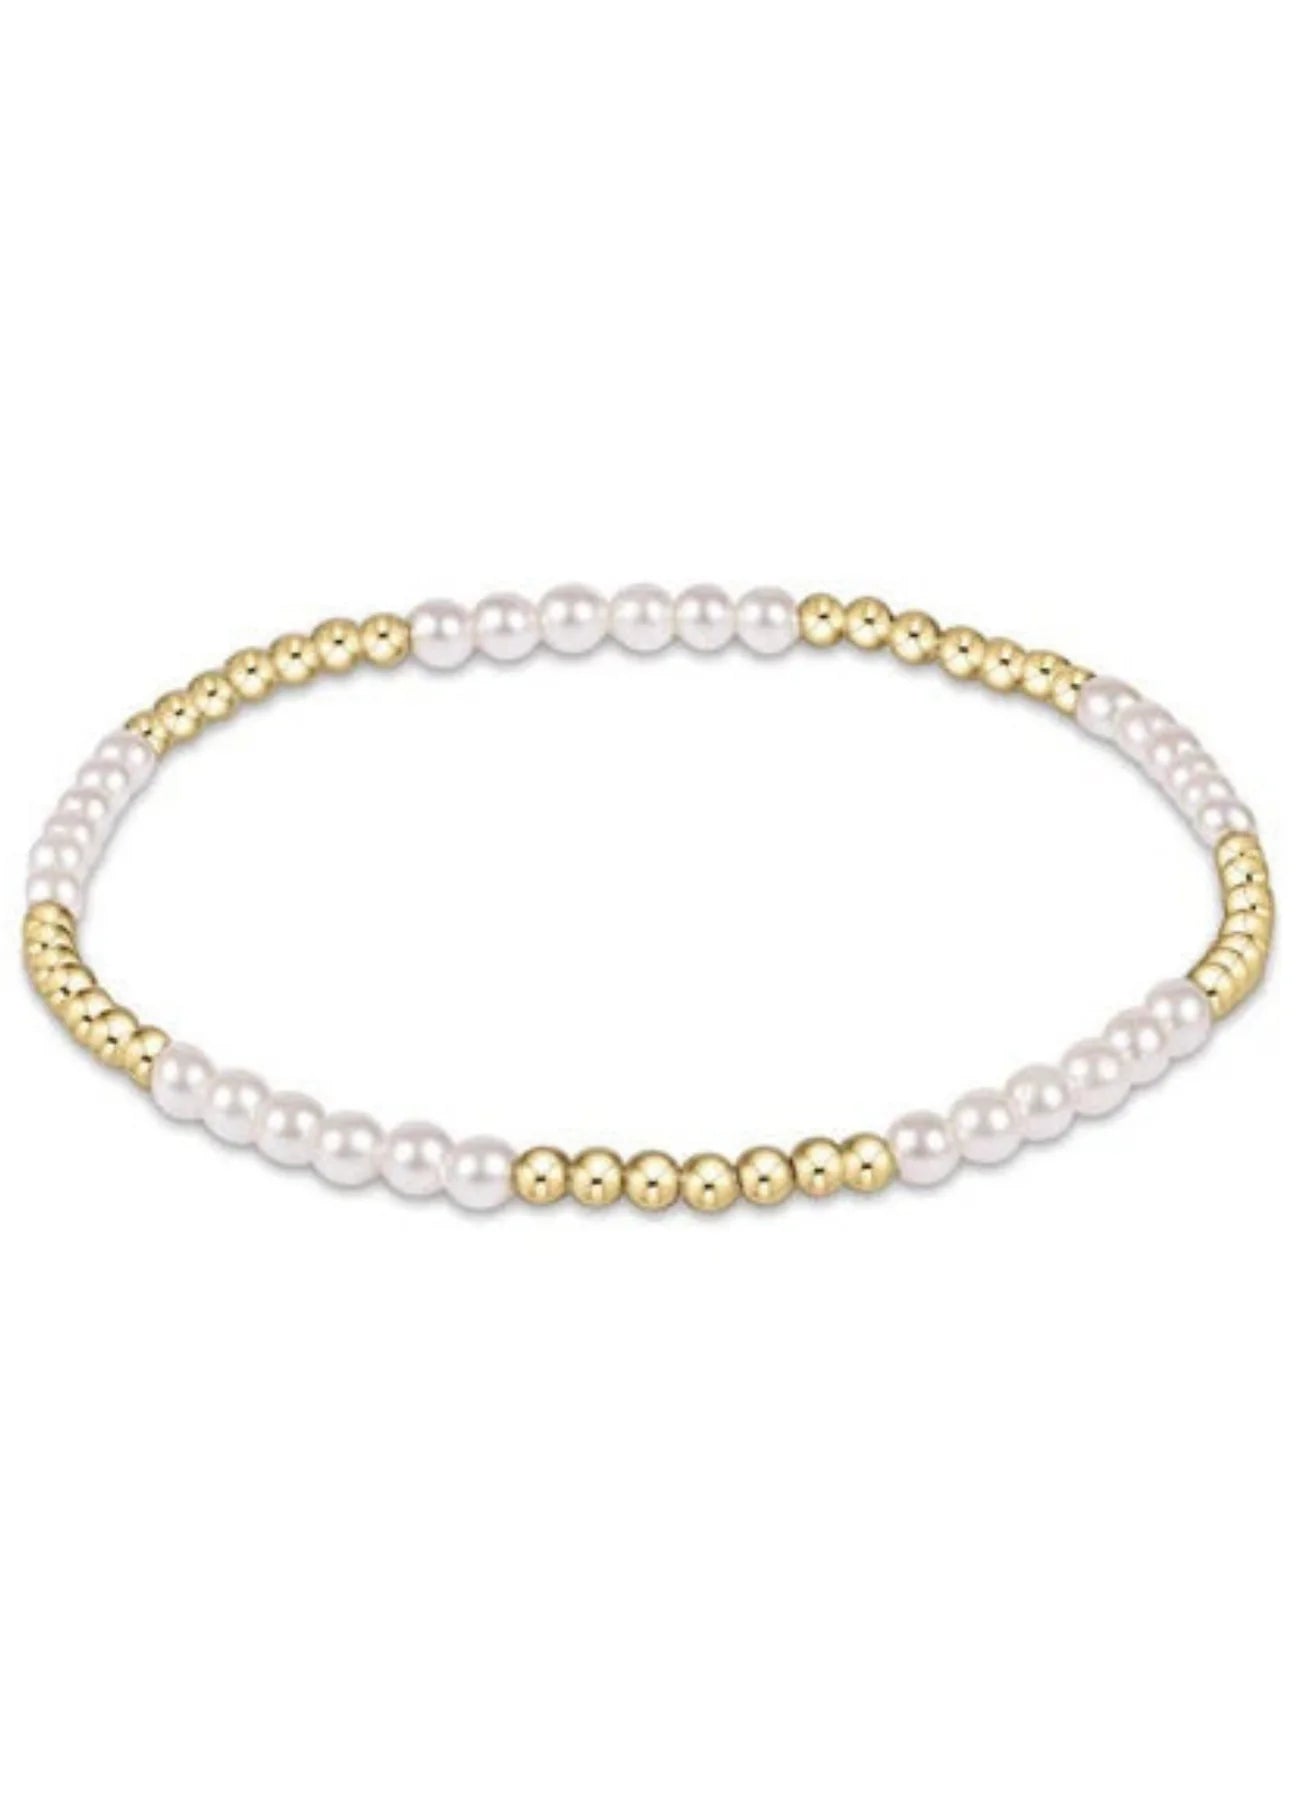 Gemstone Blissful Pattern 2.5mm Bead Bracelet